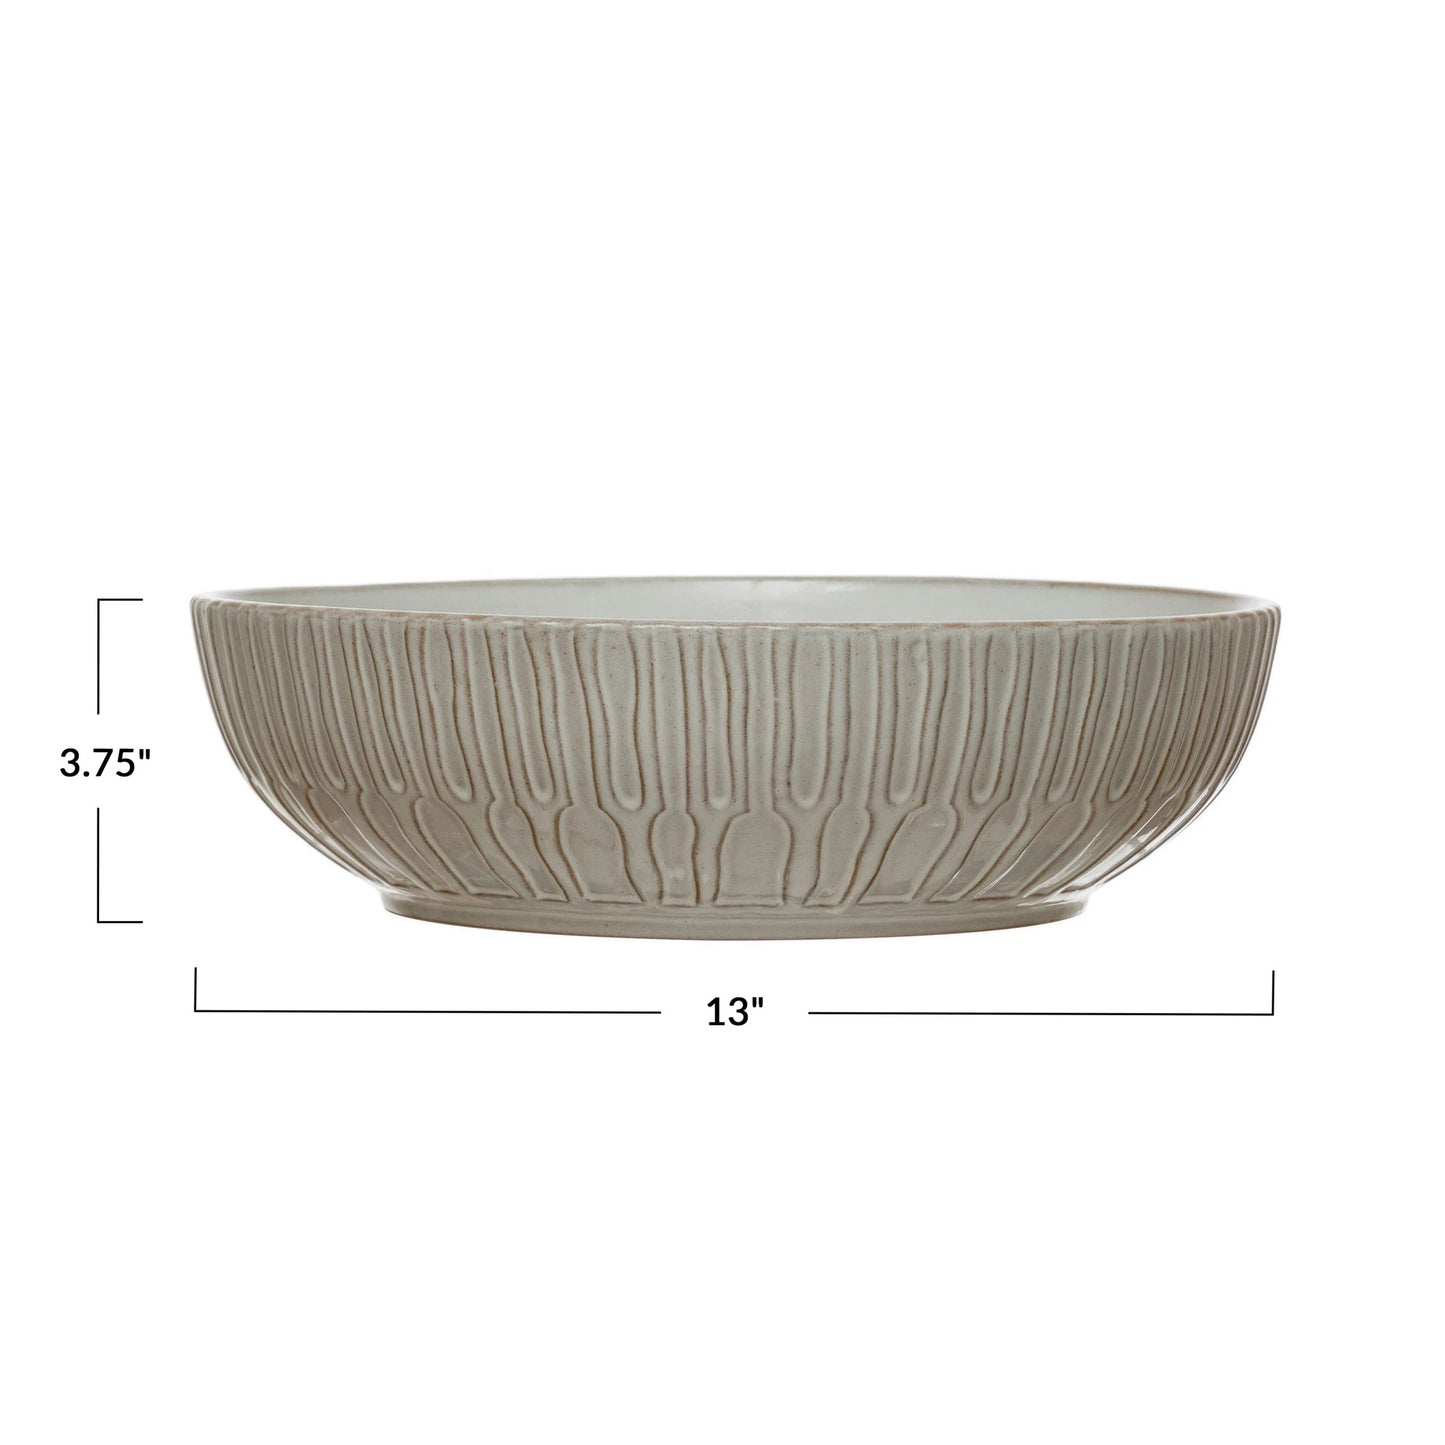 13" Stoneware White Bowl